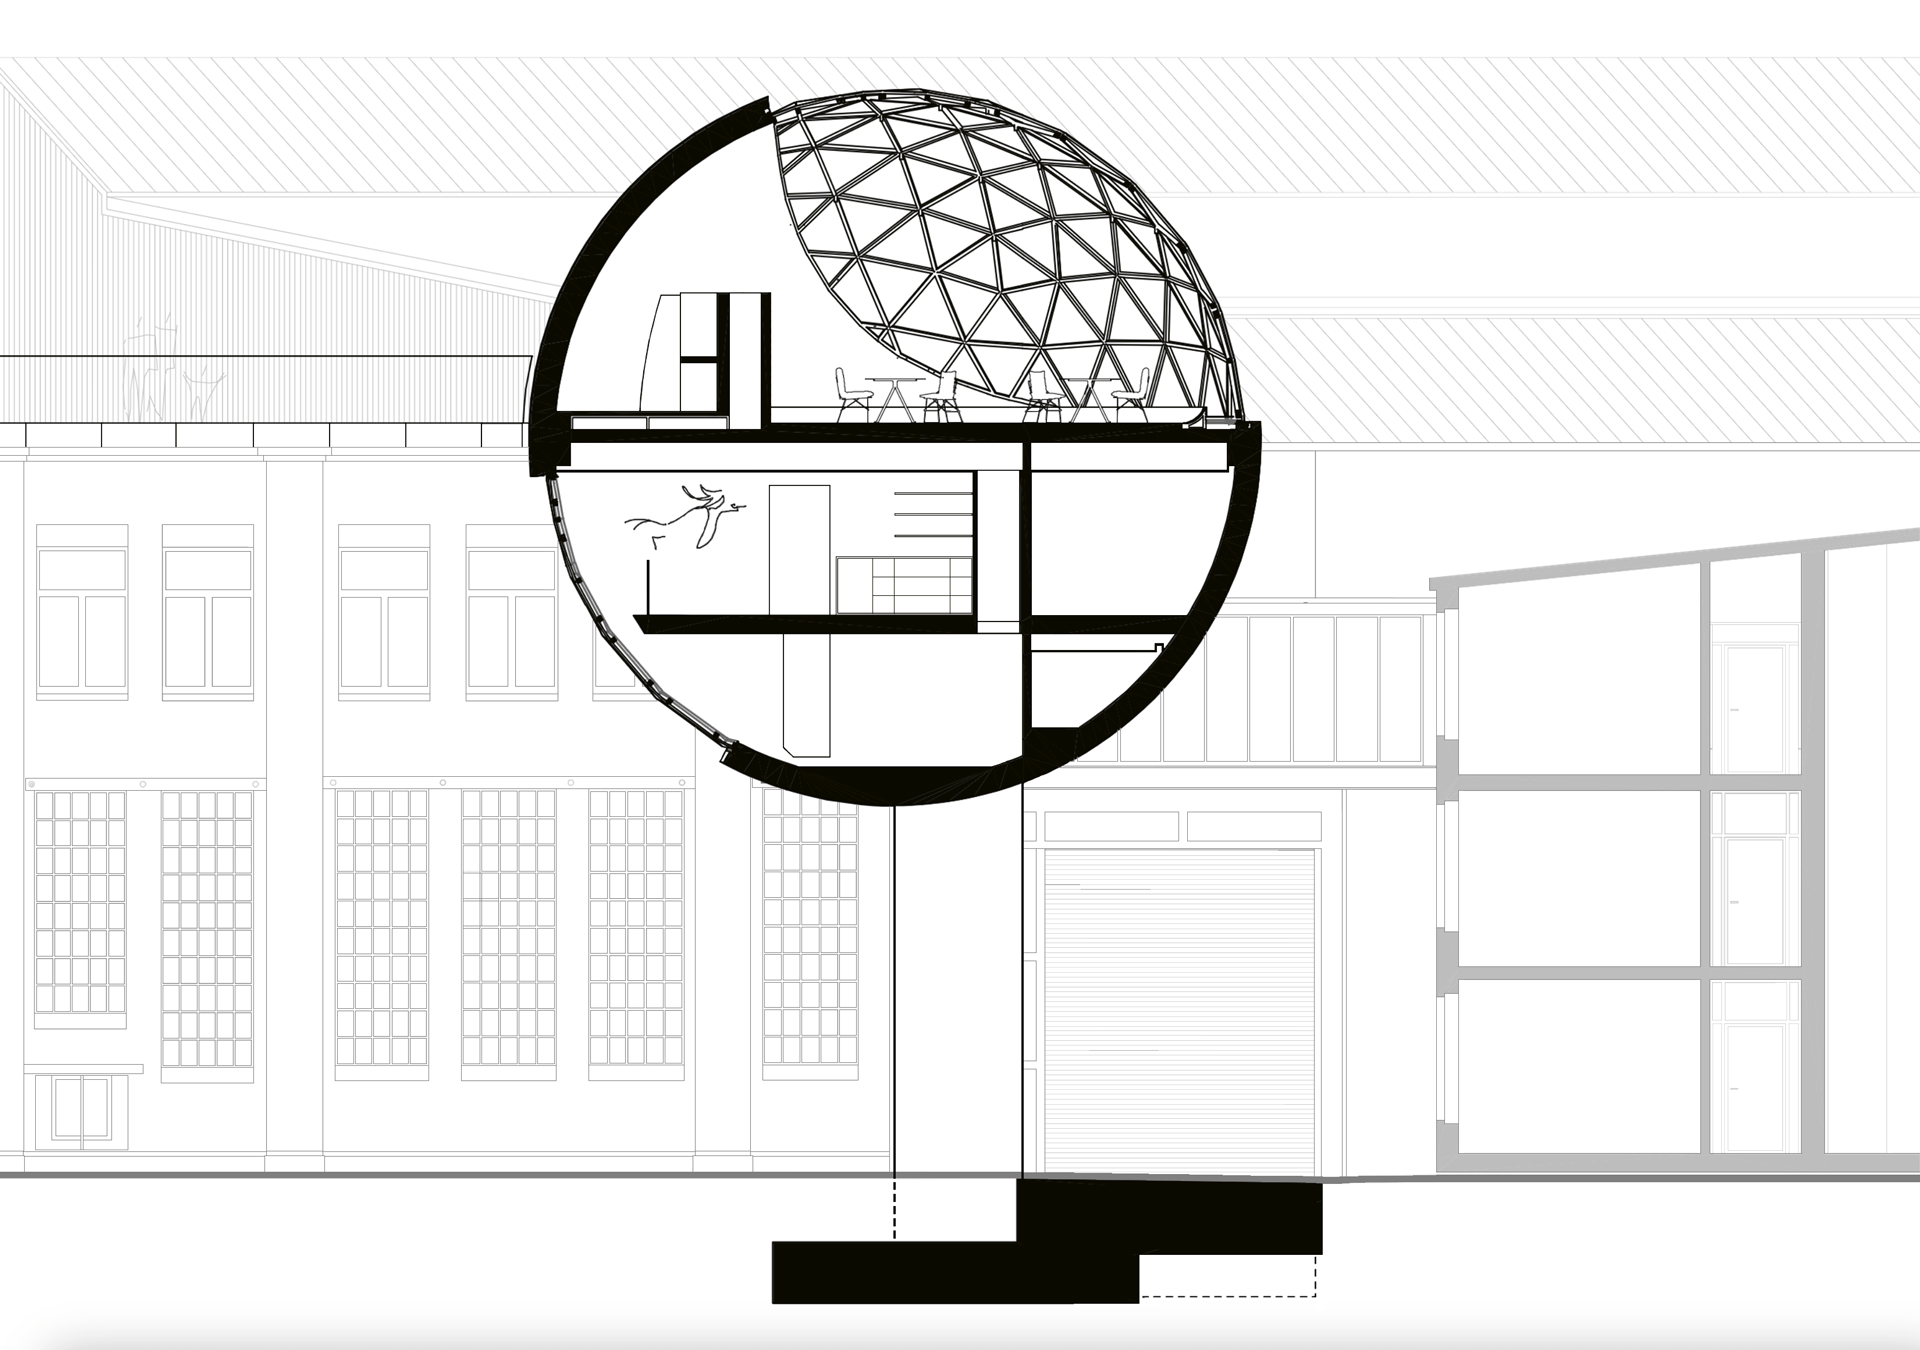 Leikkaus. Alimpana tekniikkataso, keskellä sisäänkäyntitaso ja ylimpänä ravintolataso, jonka lattia on pallon ’päiväntasaajan’ korkeudella. Piirros: Kern Architektur GmbH